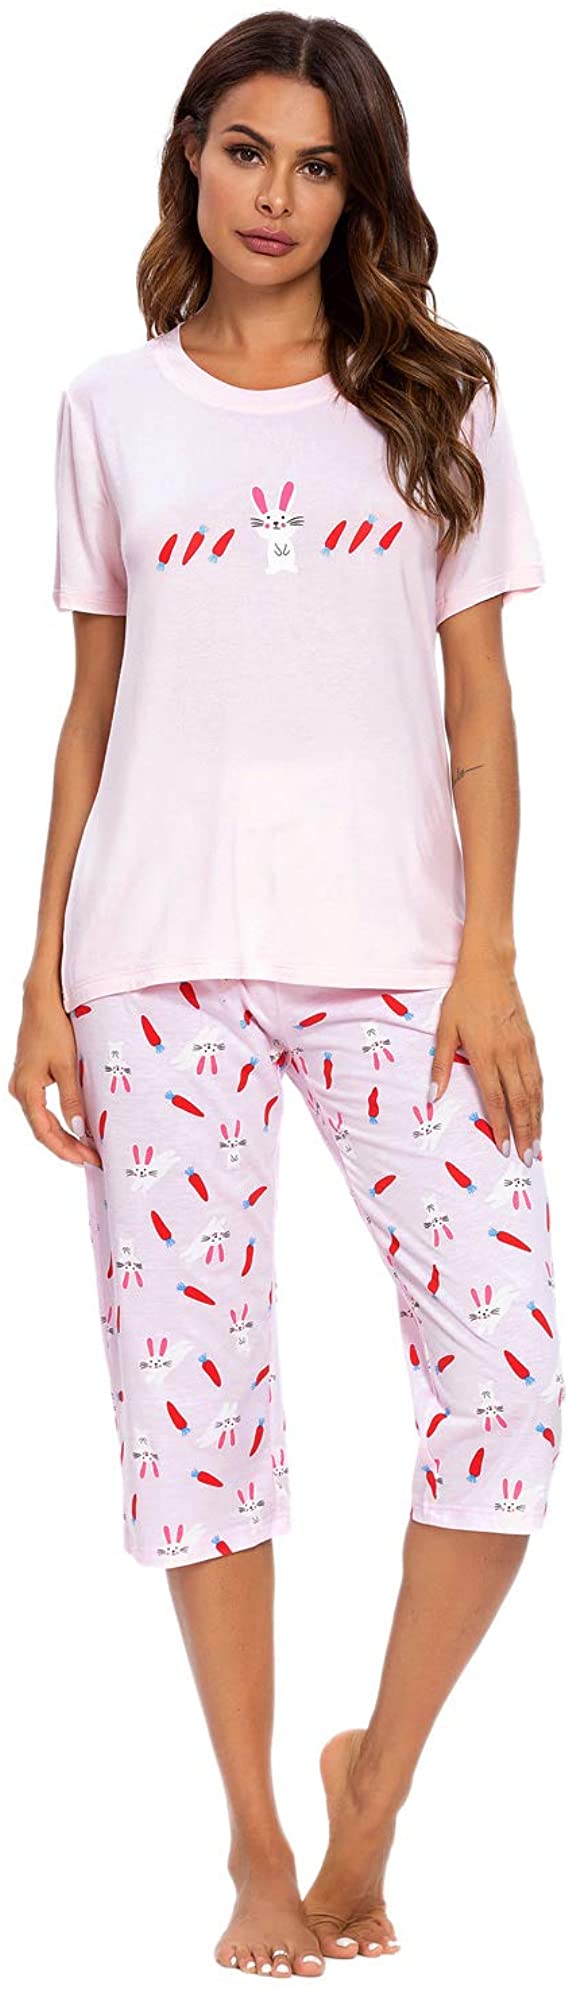 MINTLIMIT Women Pyjamas Set Ladies Cotton Long Sleeve Loungewear Top & Long Bottoms with Pockets Outfits Soft Sleepwear Nightwear PJ Set